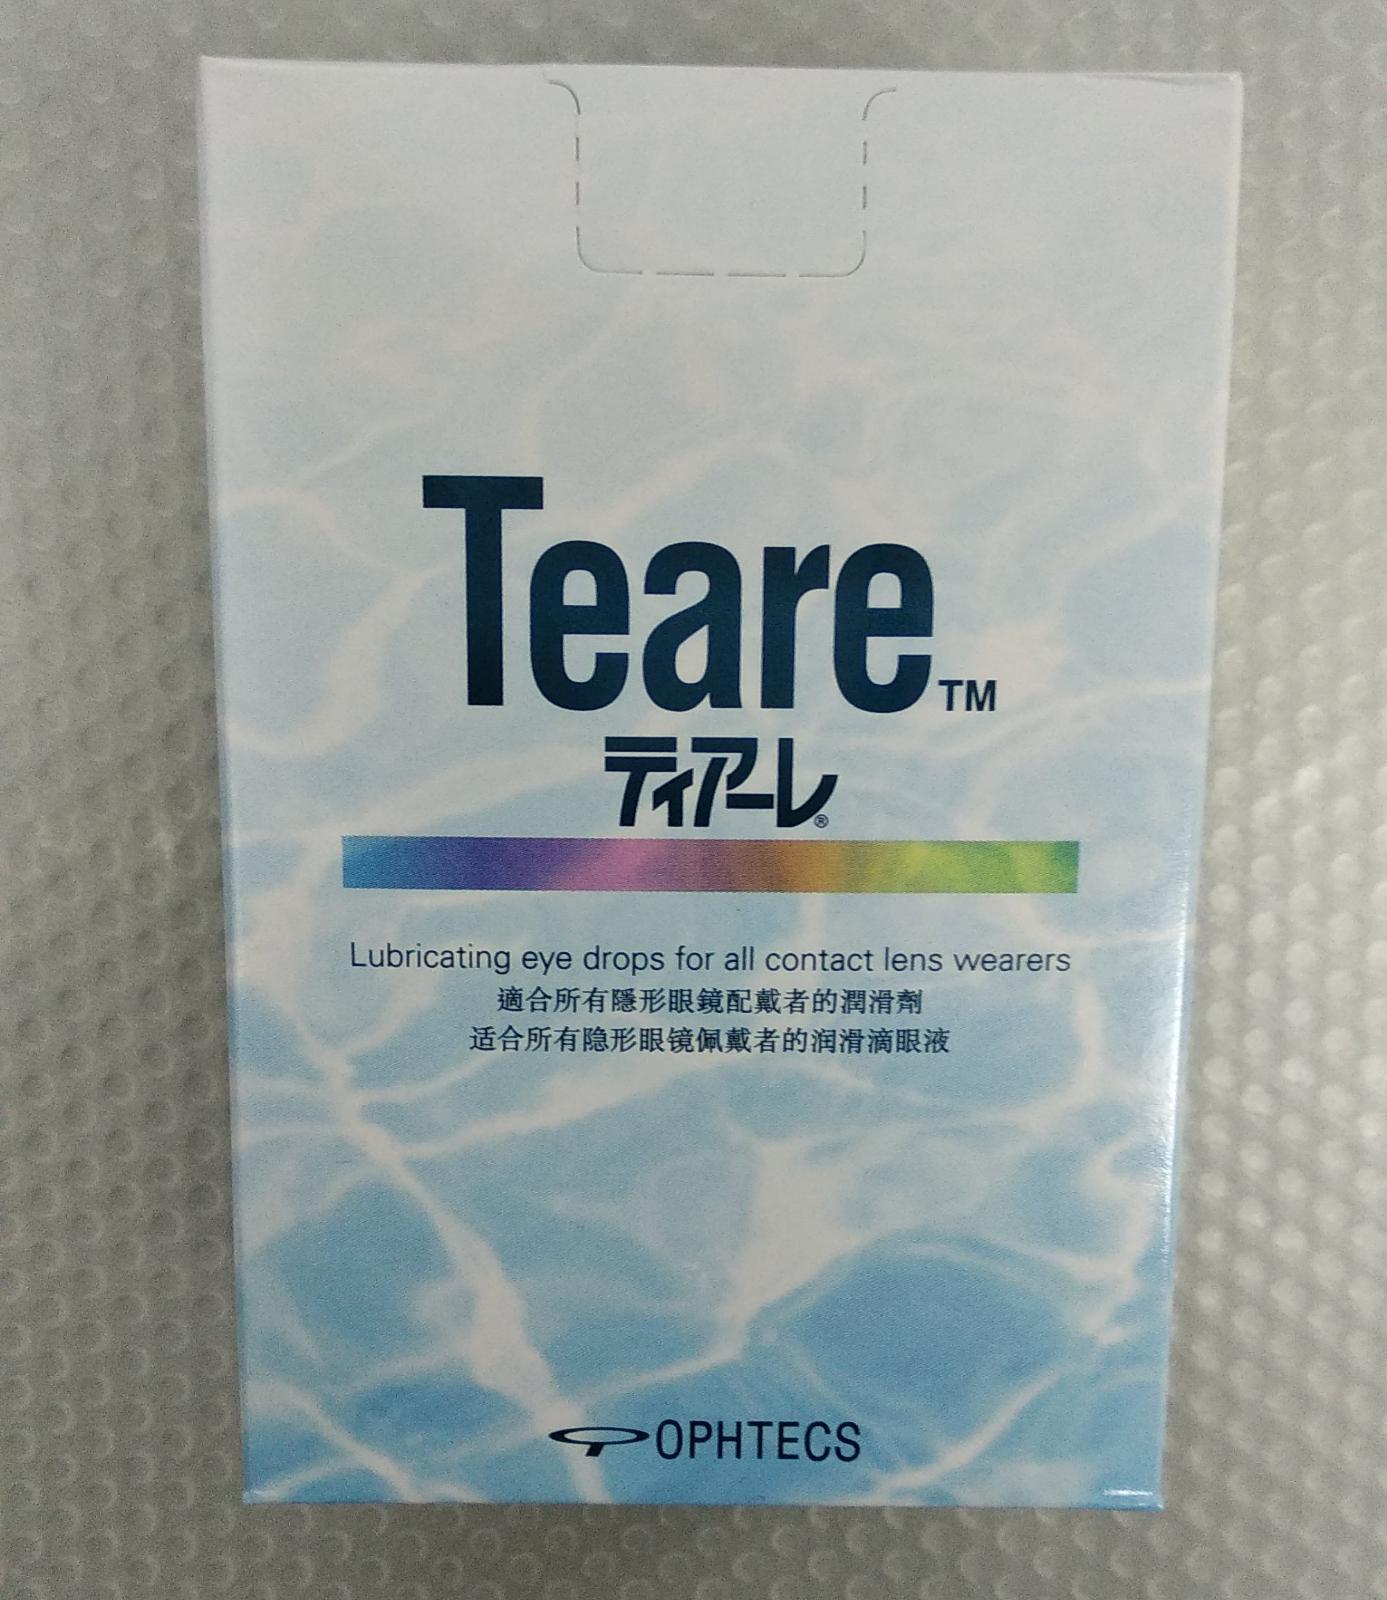 Teare